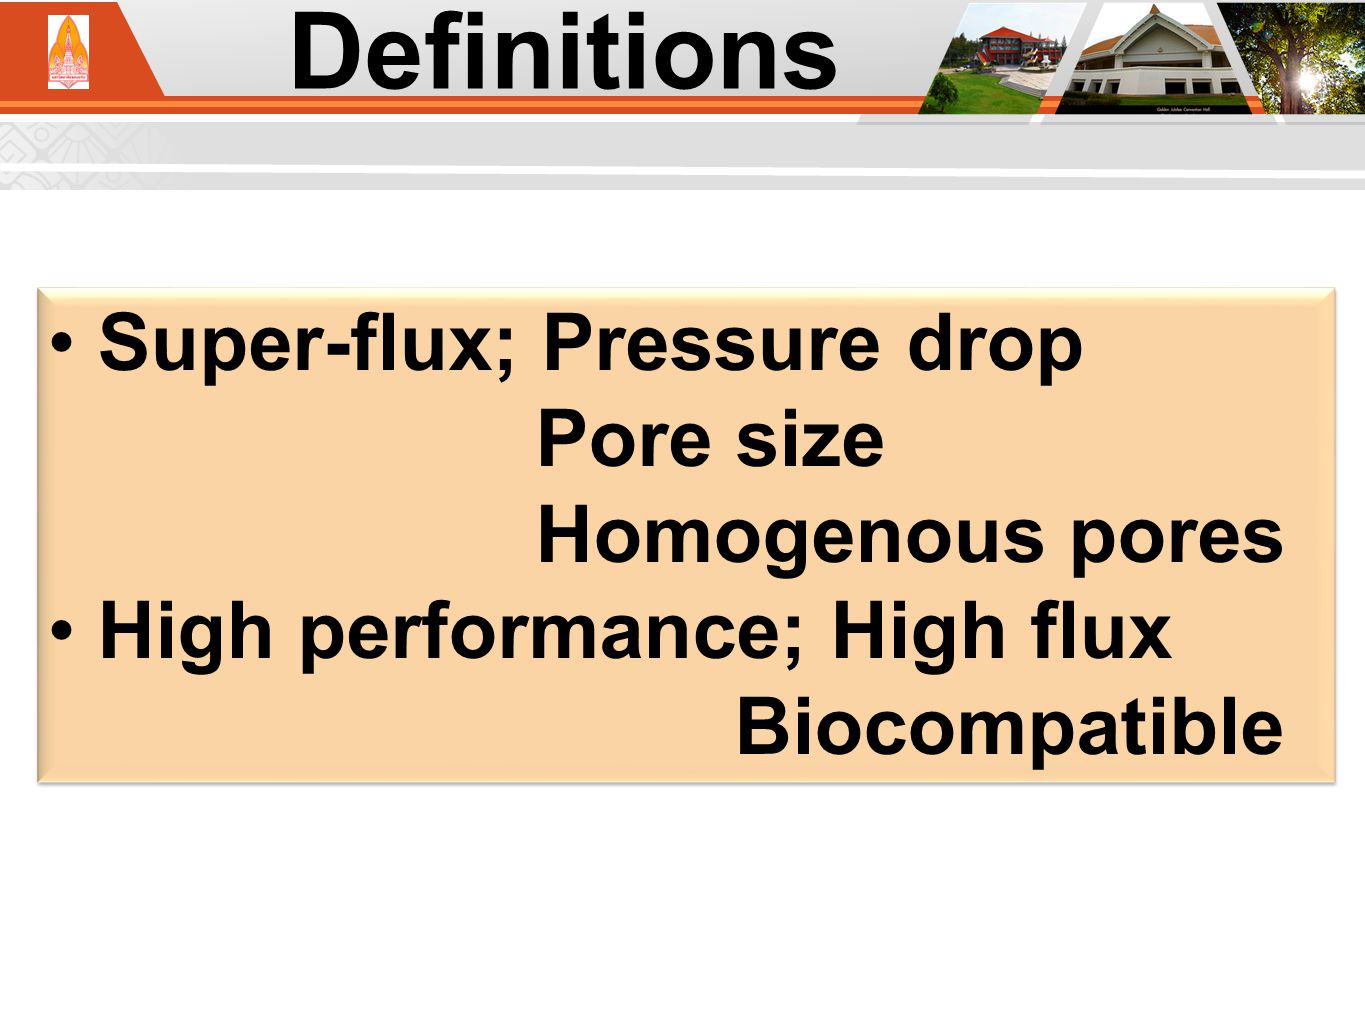 Definitions Super-flux; Pressure drop Pore size Homogenous pores High performance; High flux Biocompatible Super-flux; Pressure drop Pore size Homogenous pores High performance; High flux Biocompatible